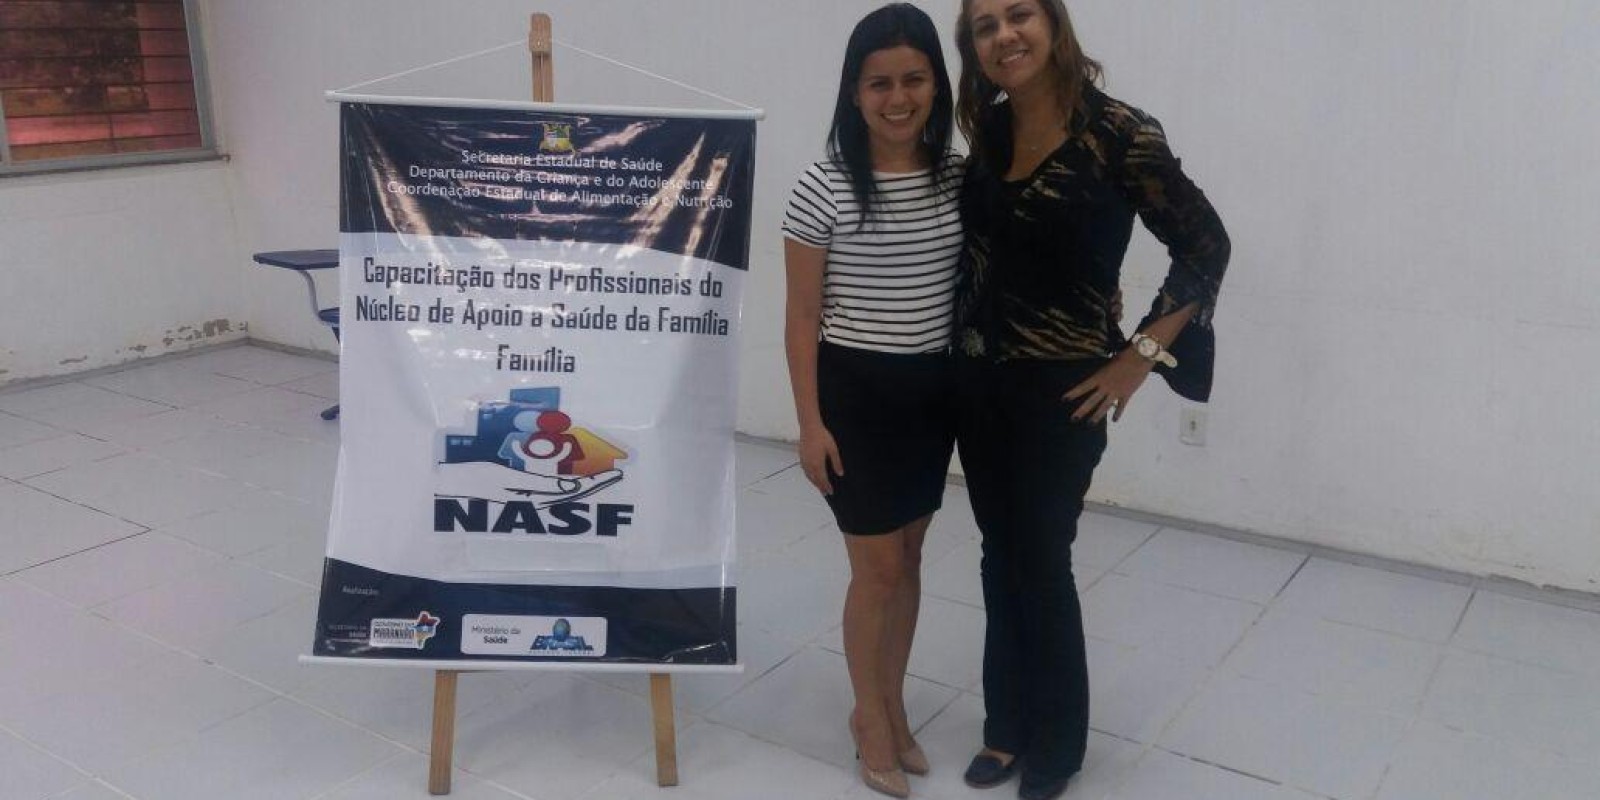 NASF de Junco do Maranhão em evidência